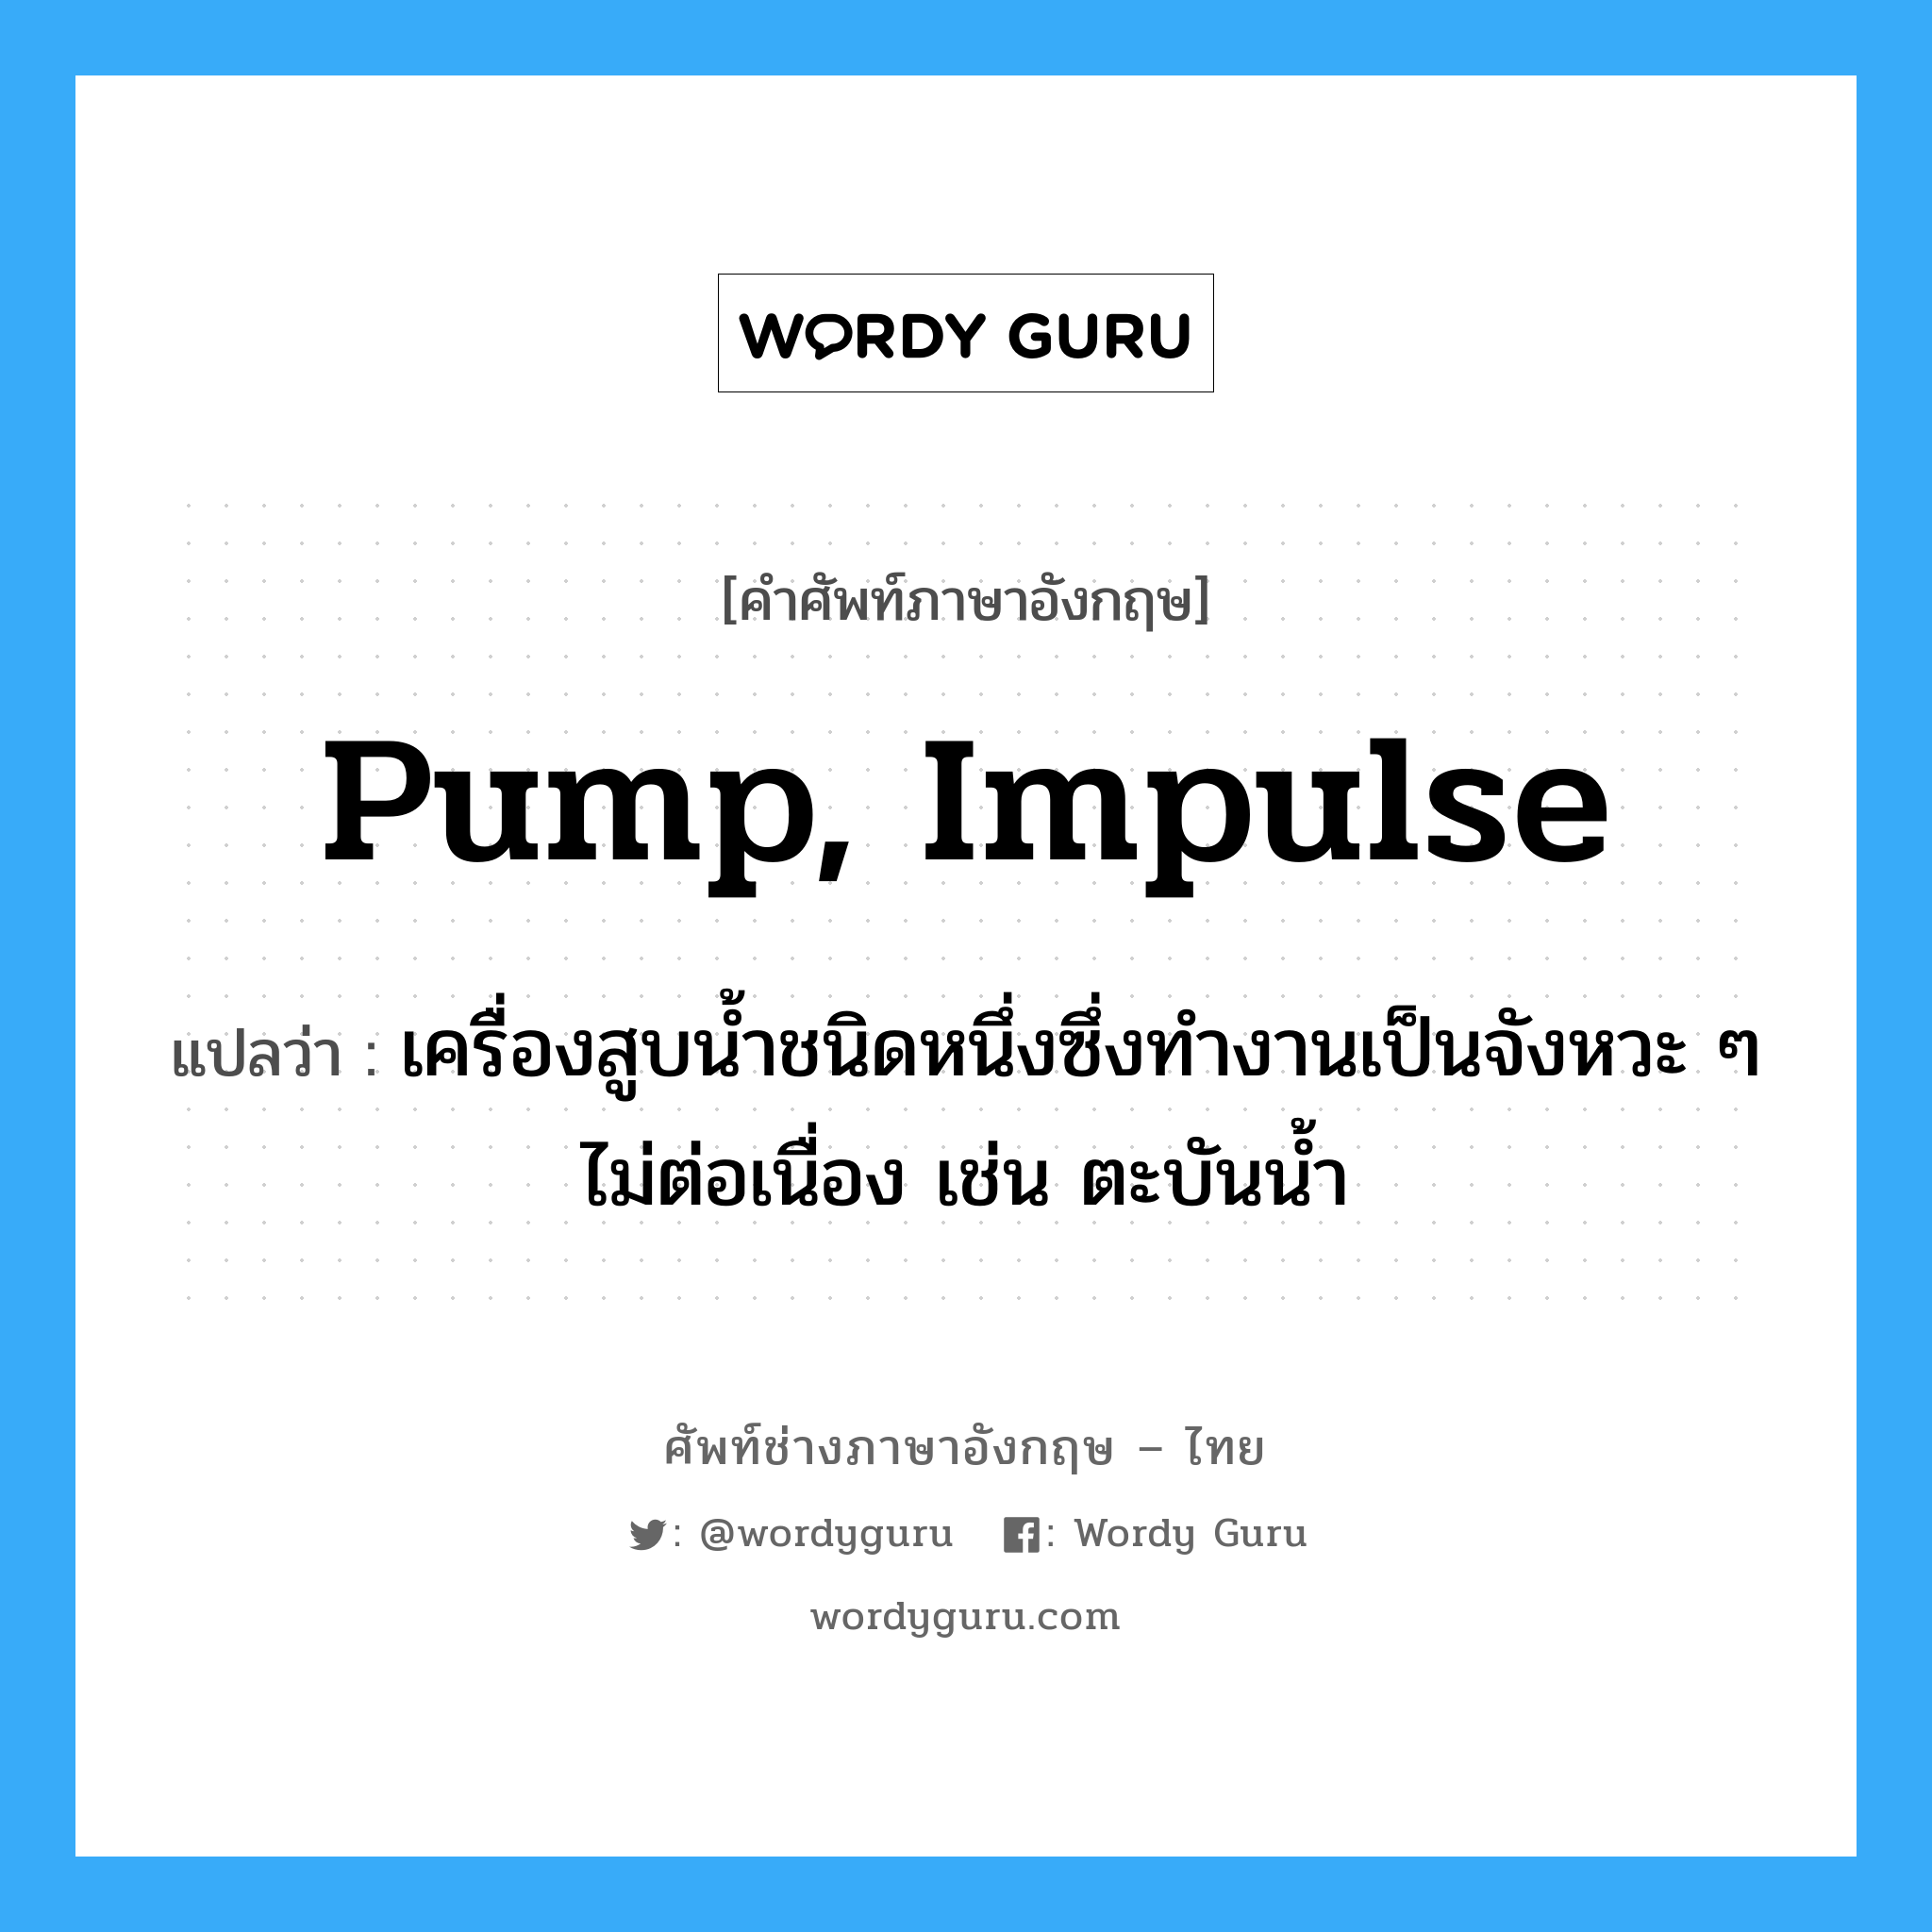 pump, impulse แปลว่า?, คำศัพท์ช่างภาษาอังกฤษ - ไทย pump, impulse คำศัพท์ภาษาอังกฤษ pump, impulse แปลว่า เครื่องสูบน้ำชนิดหนึ่งซึ่งทำงานเป็นจังหวะ ๆ ไม่ต่อเนื่อง เช่น ตะบันน้ำ